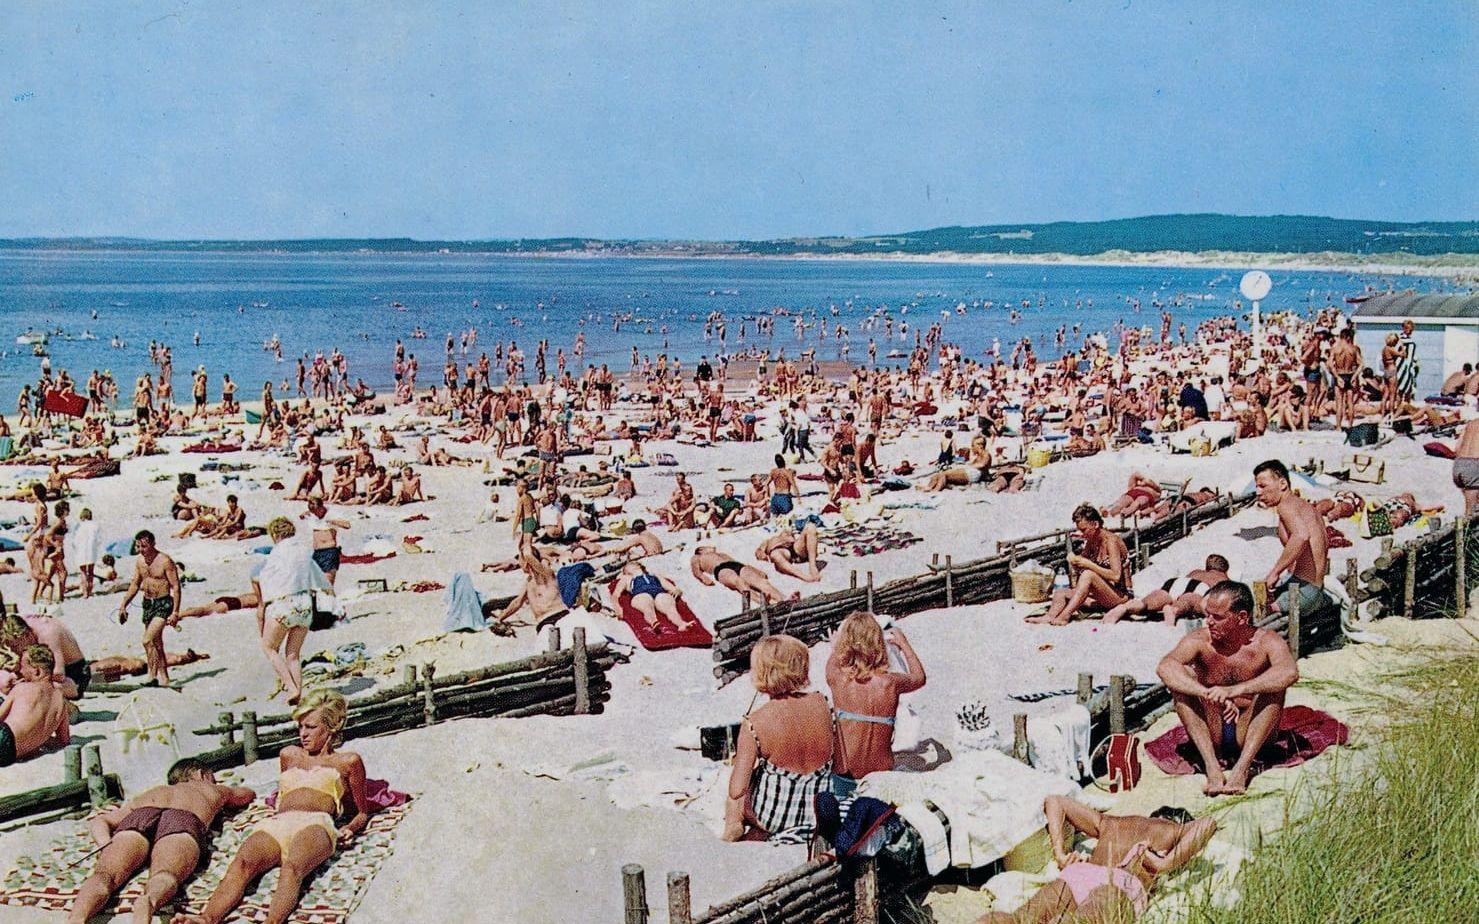 Lata dagar. Sommaren 1959 var en osedvanligt varm sommar, minns Anders Bergenek. Hettan ska, enligt Hallandsposten, till och med ha fått människor att överge det ljumna havsvattnet till förmån för det svalkande slangvattnet vid biltvätten.